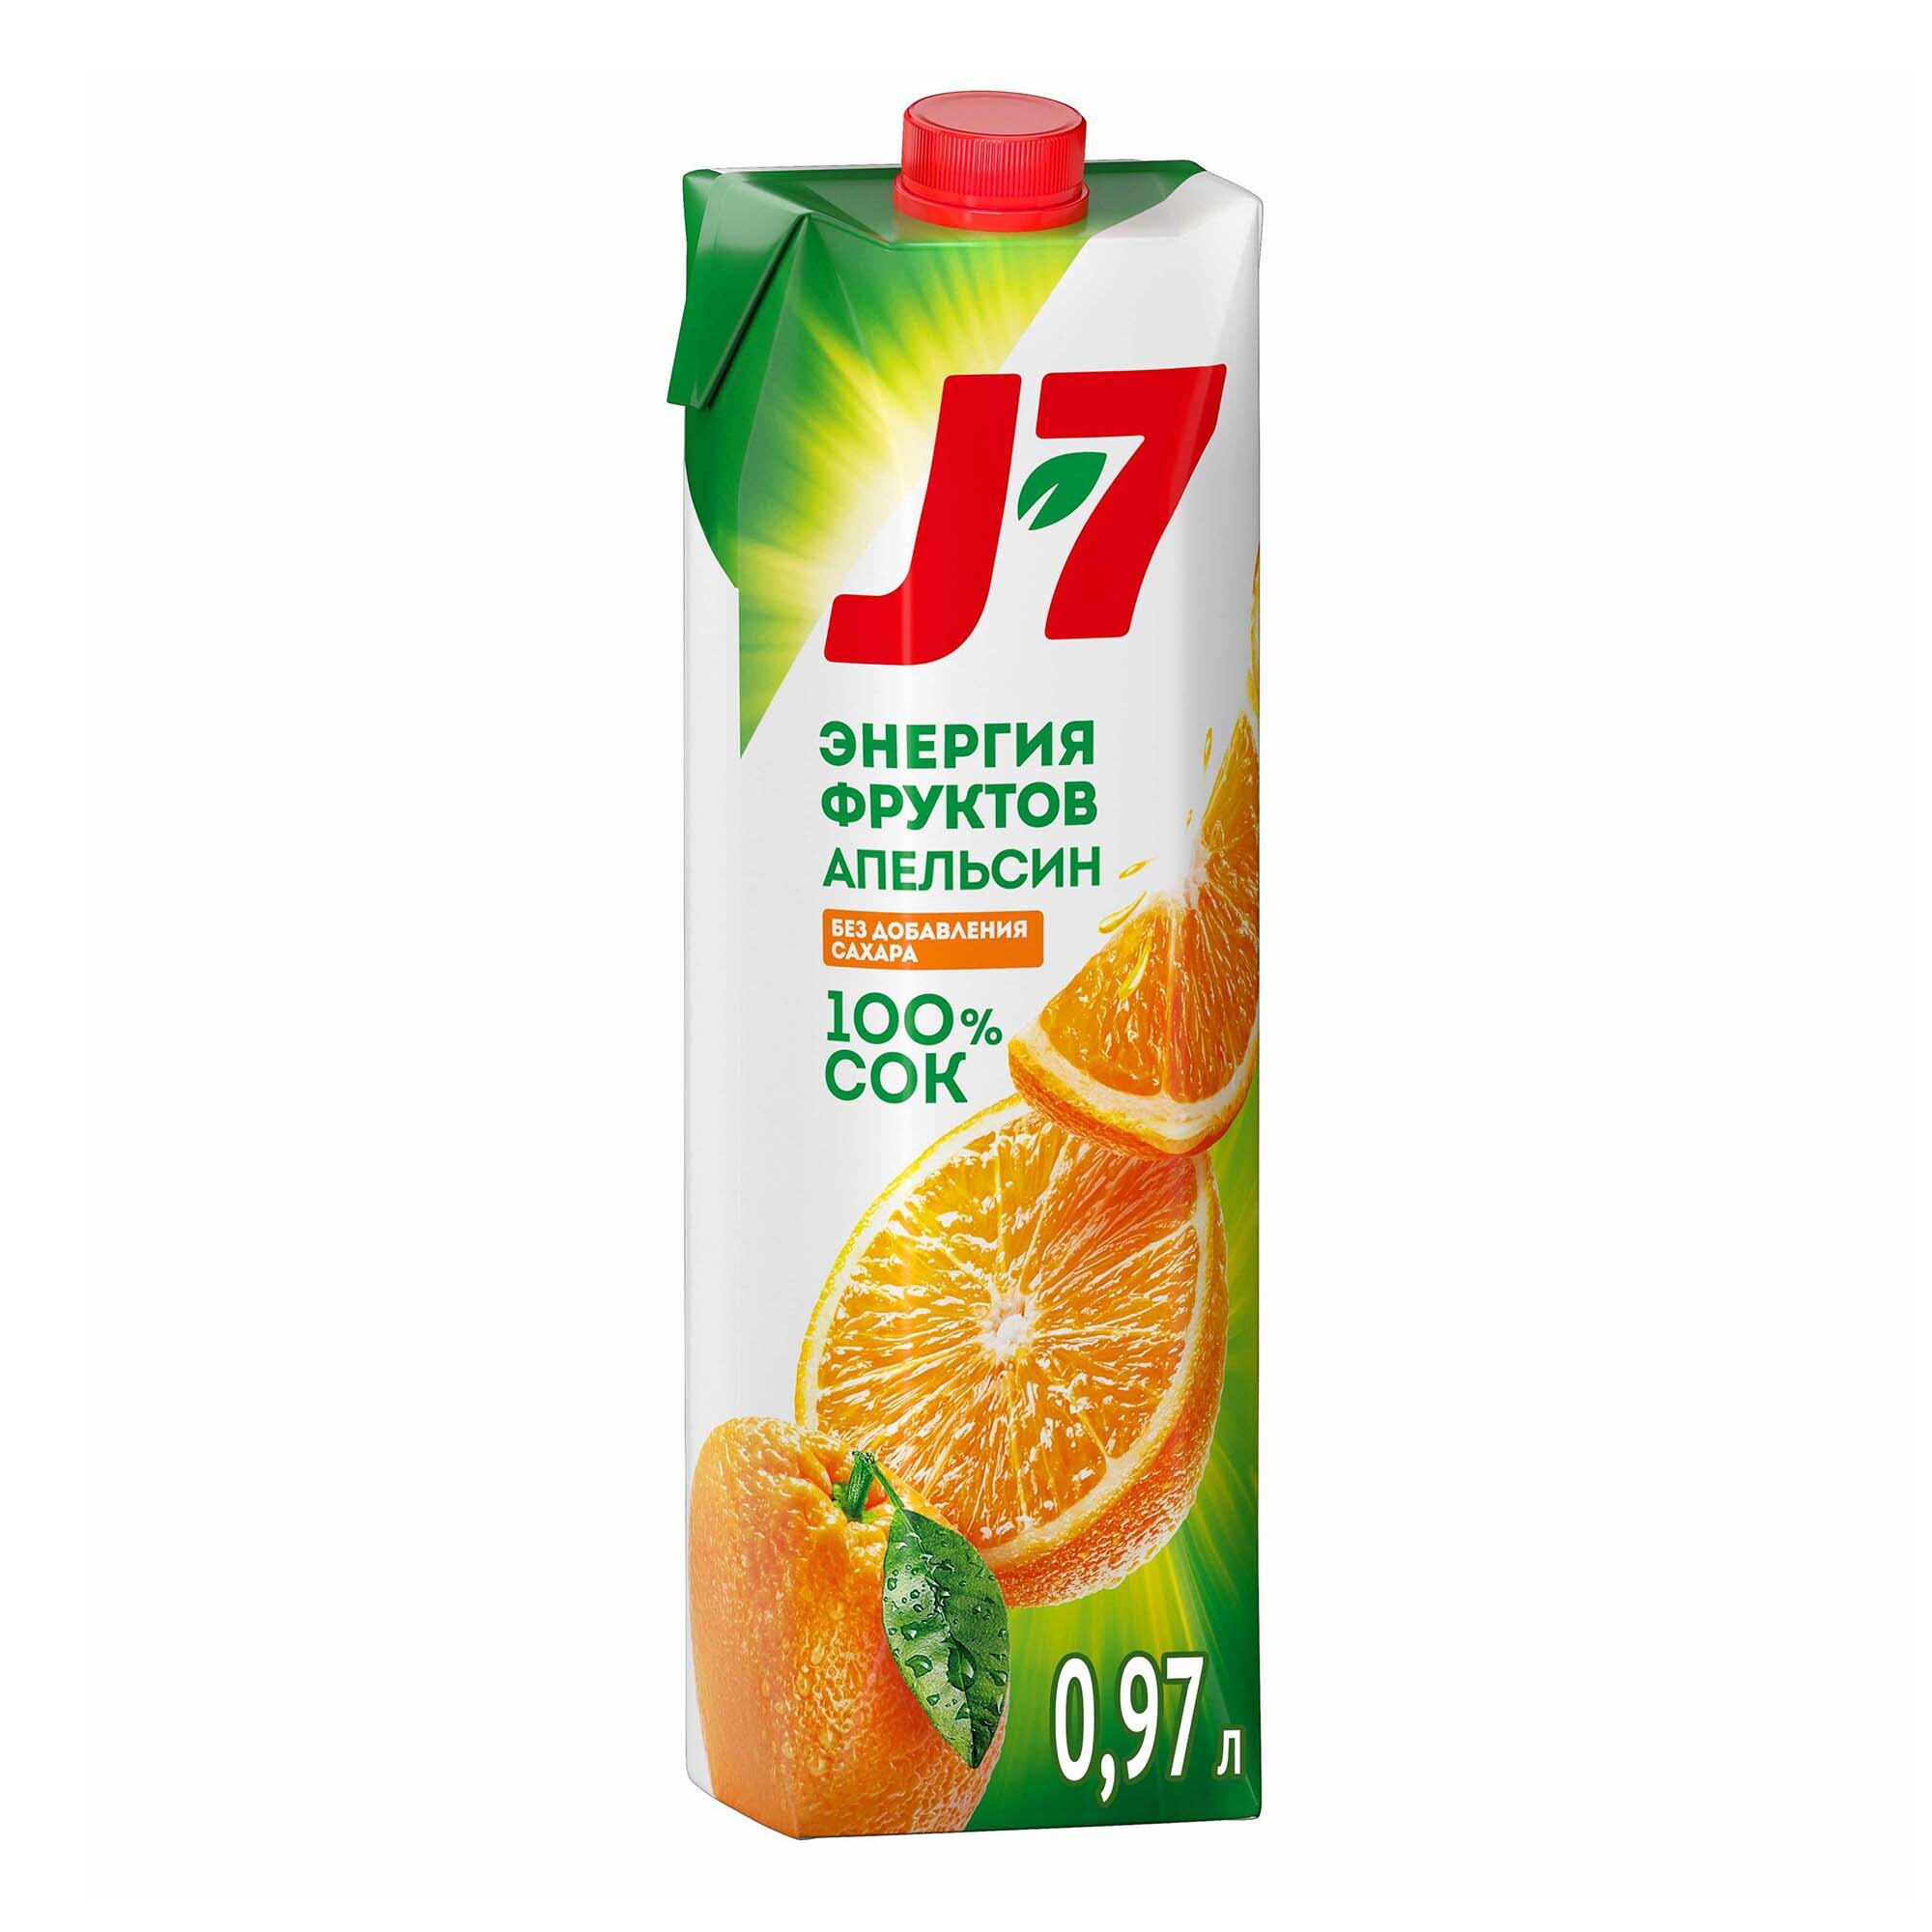 7 соков купить. Сок Джей Севен апельсин. Нектар грейпфрут j7 0,97 л. Сок j7 апельсин с мякотью. J7 энергия фруктов апельсин без сахара.